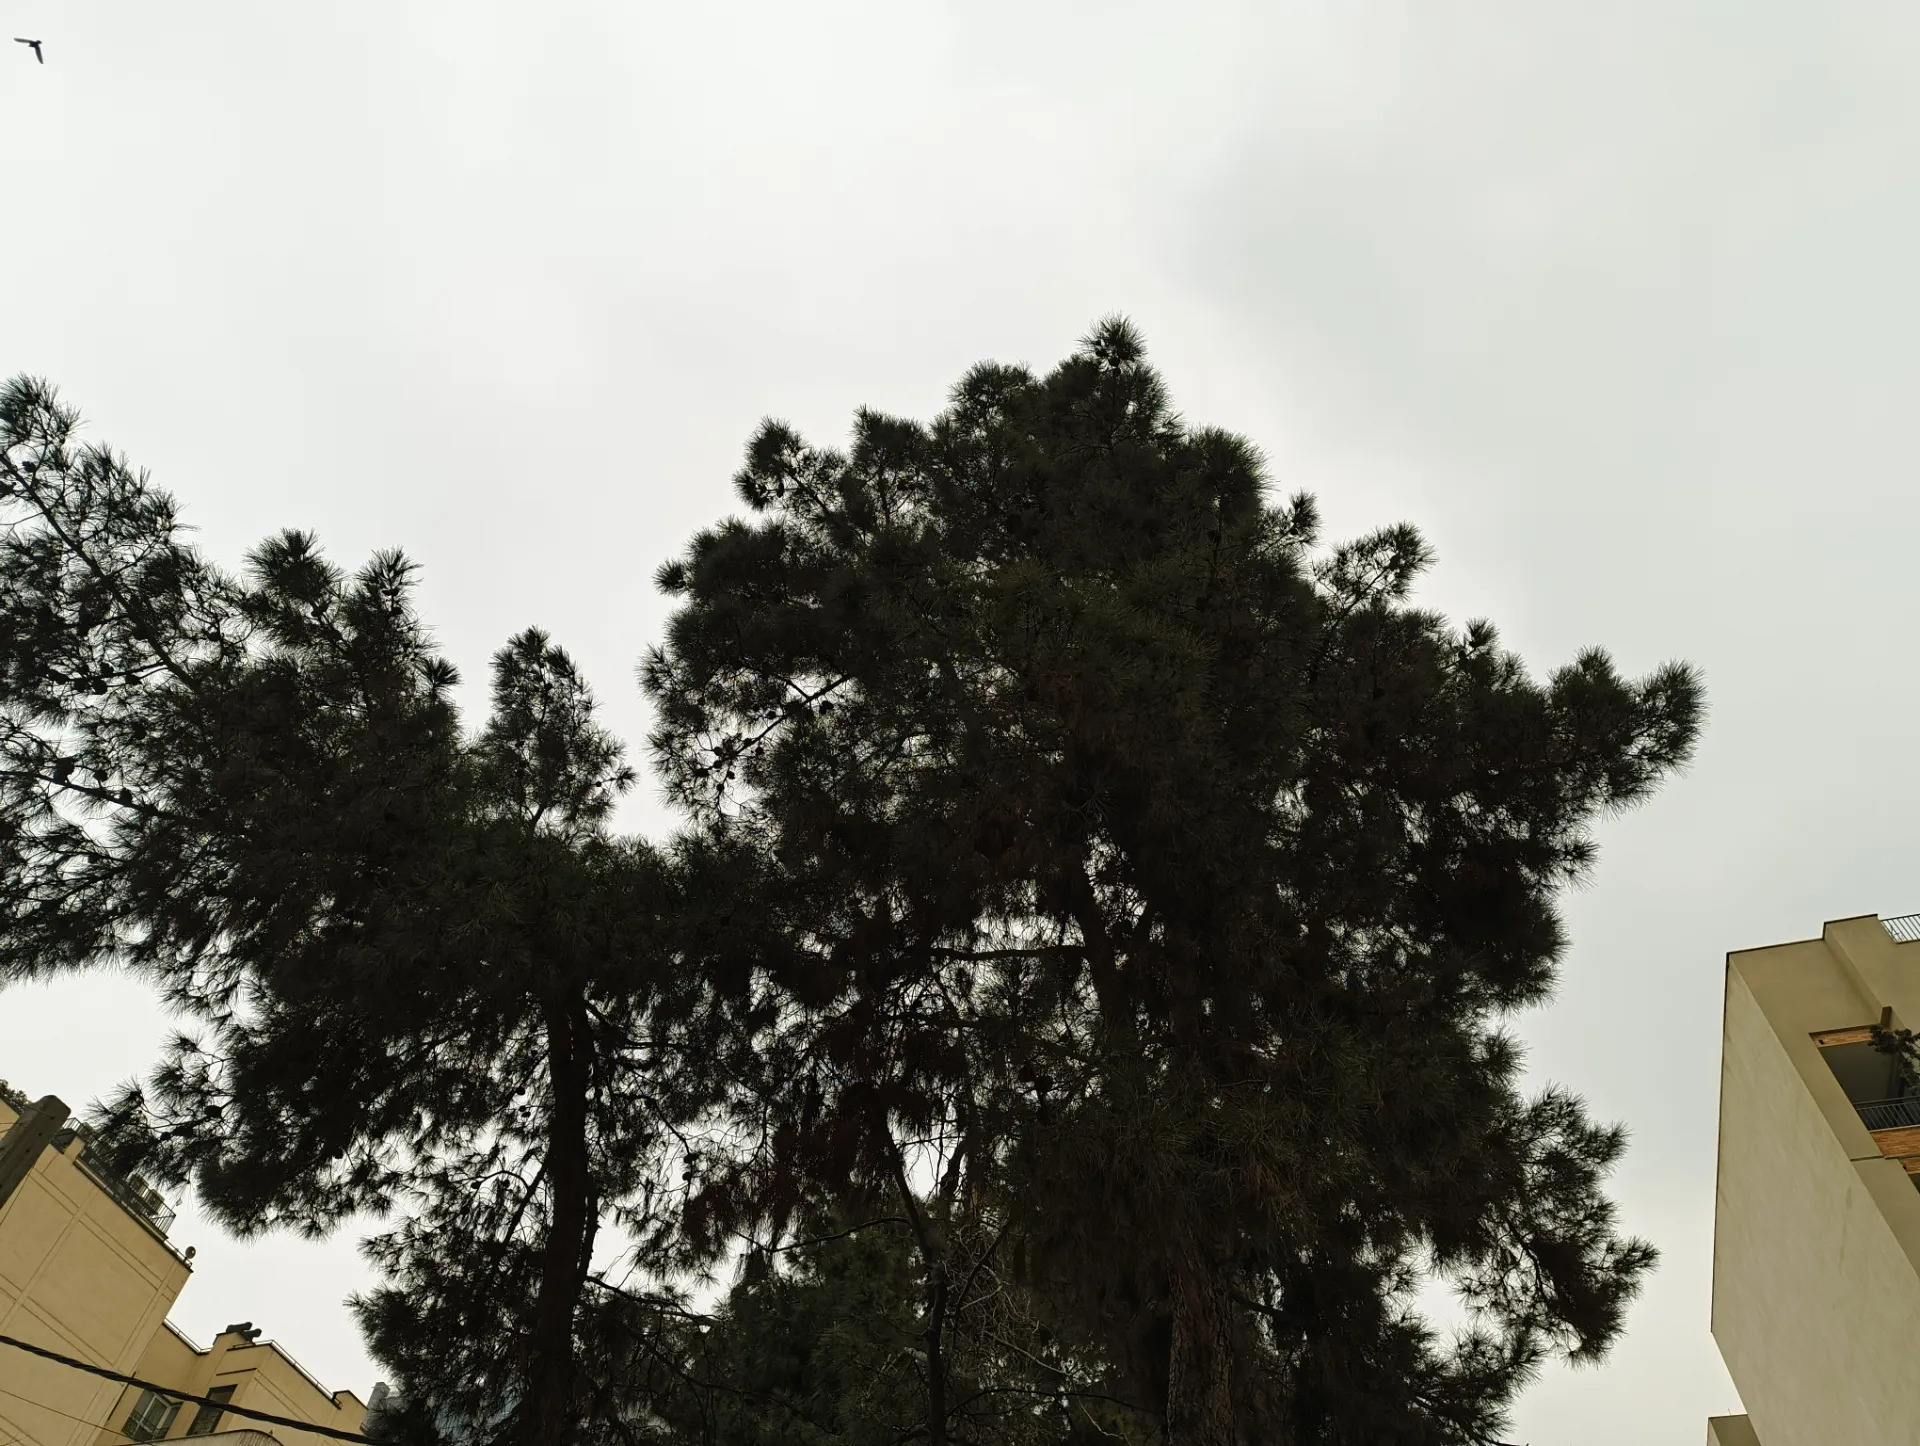 نمونه عکس ناتینگ فون 2a در محیط خارجی با نور روز از چند درخت و پس زمینه آسمان